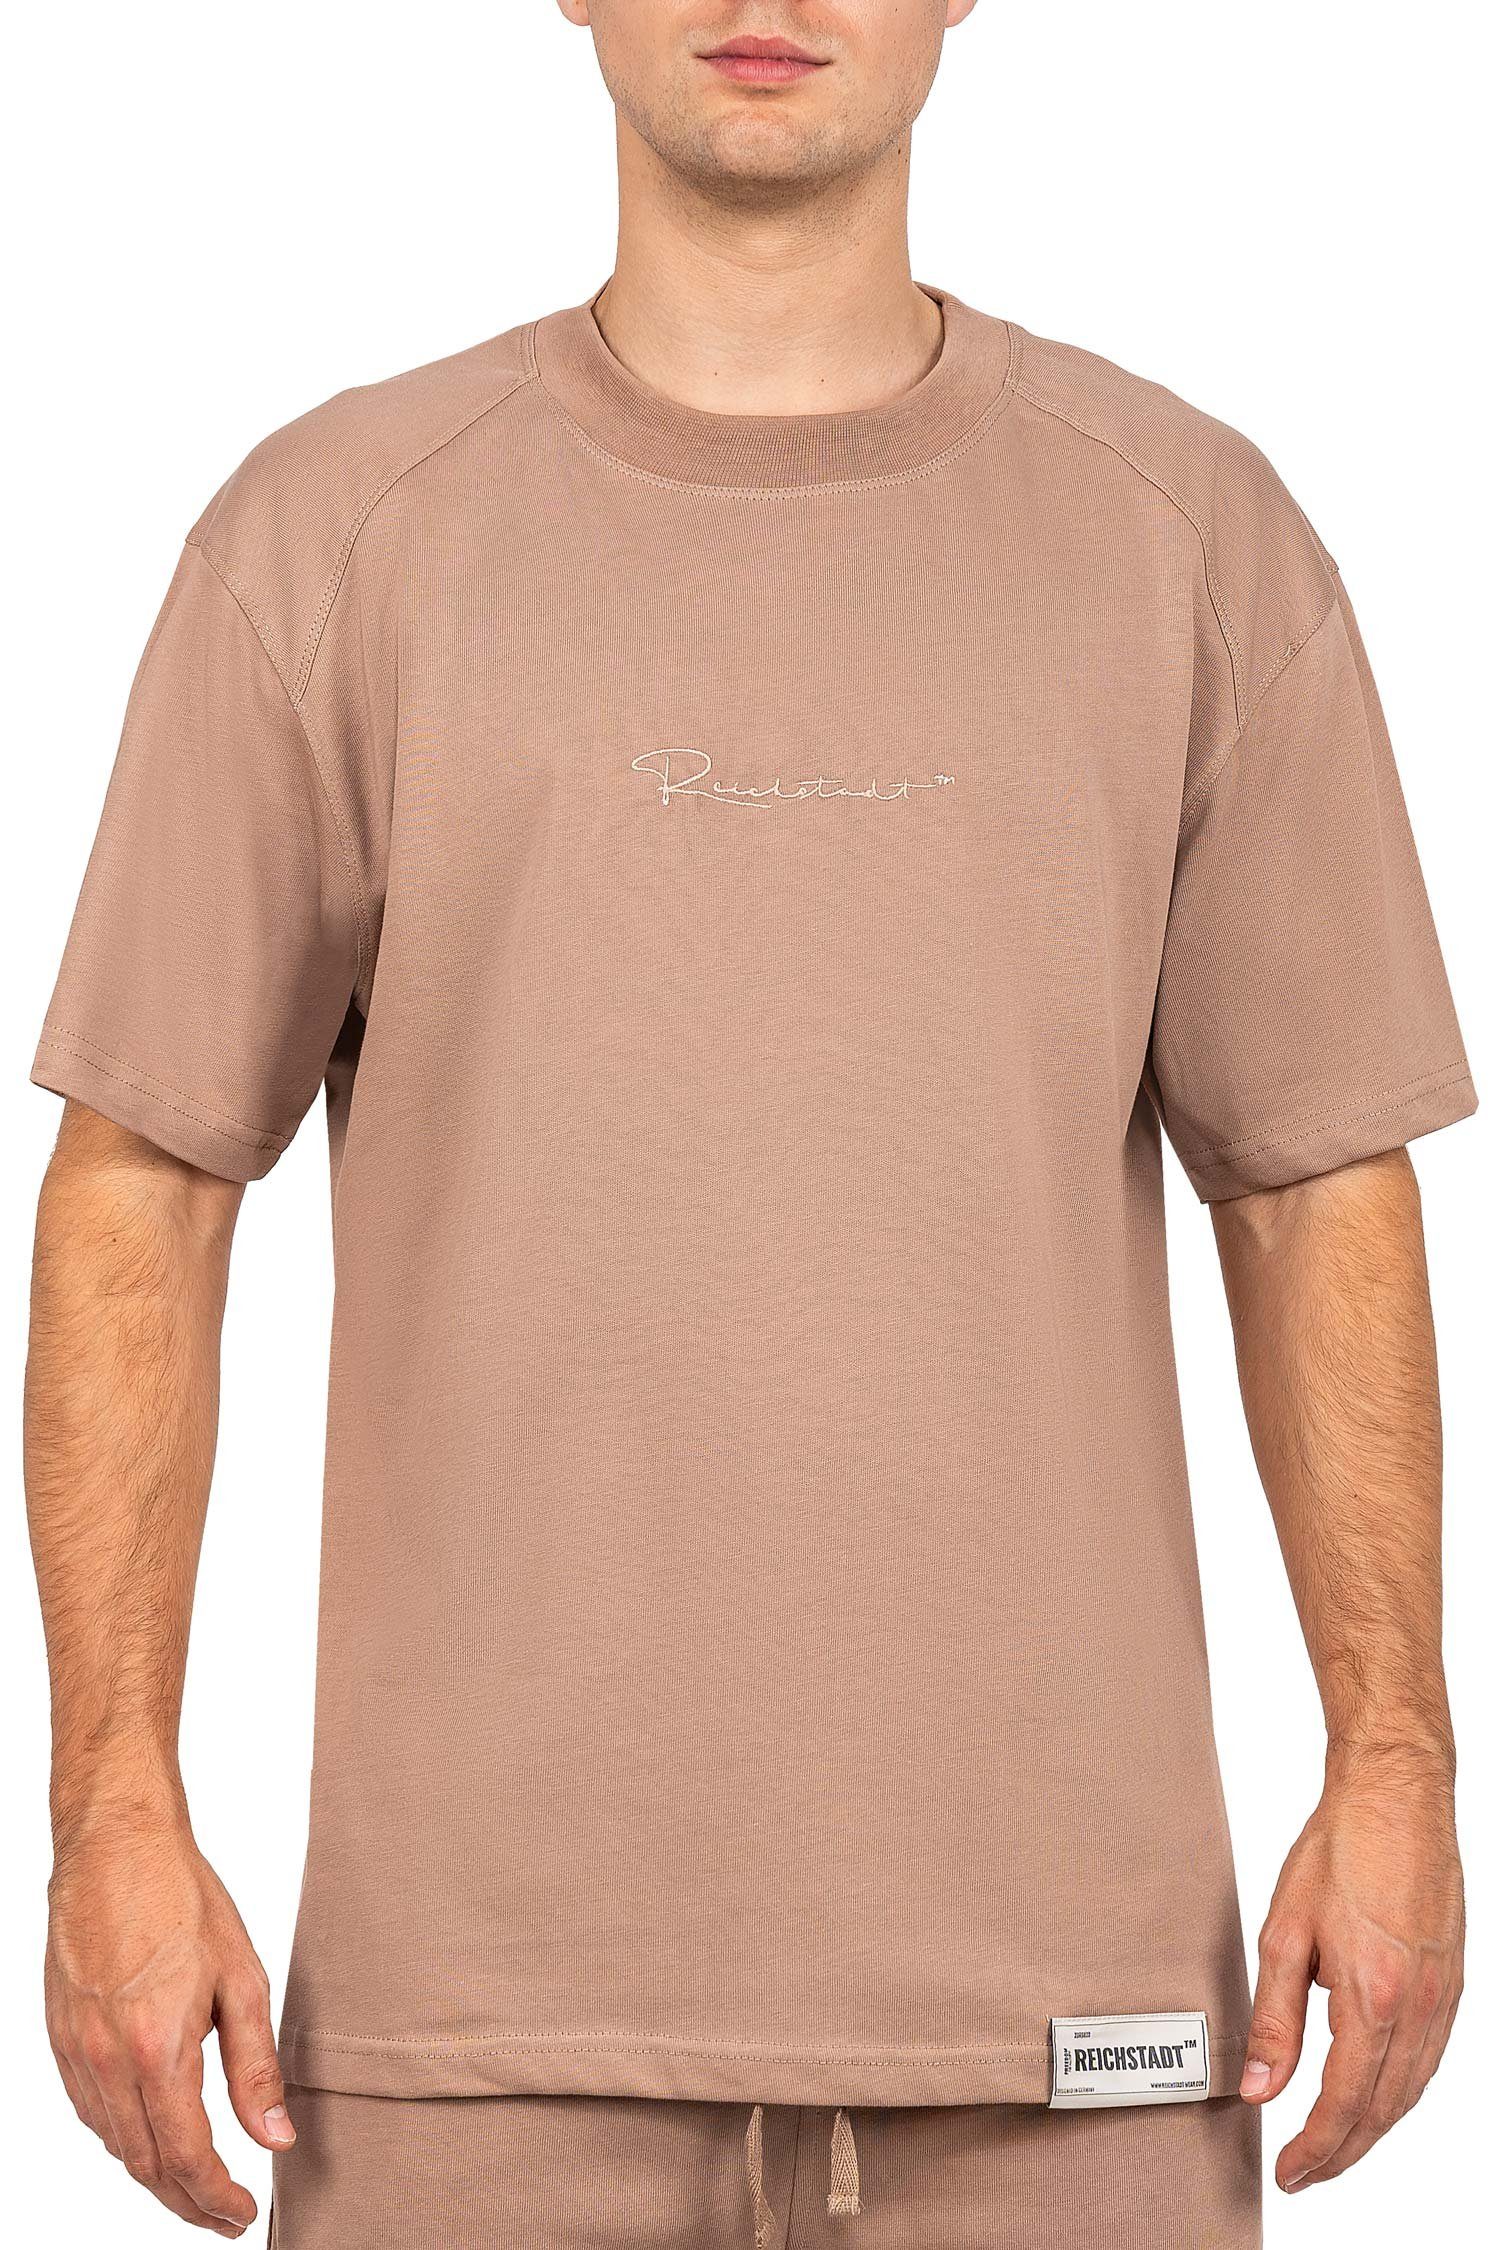 Reichstadt Oversize-Shirt Stitching Casual 22RS033 Braun mit T-shirt Brust auf (1-tlg) der